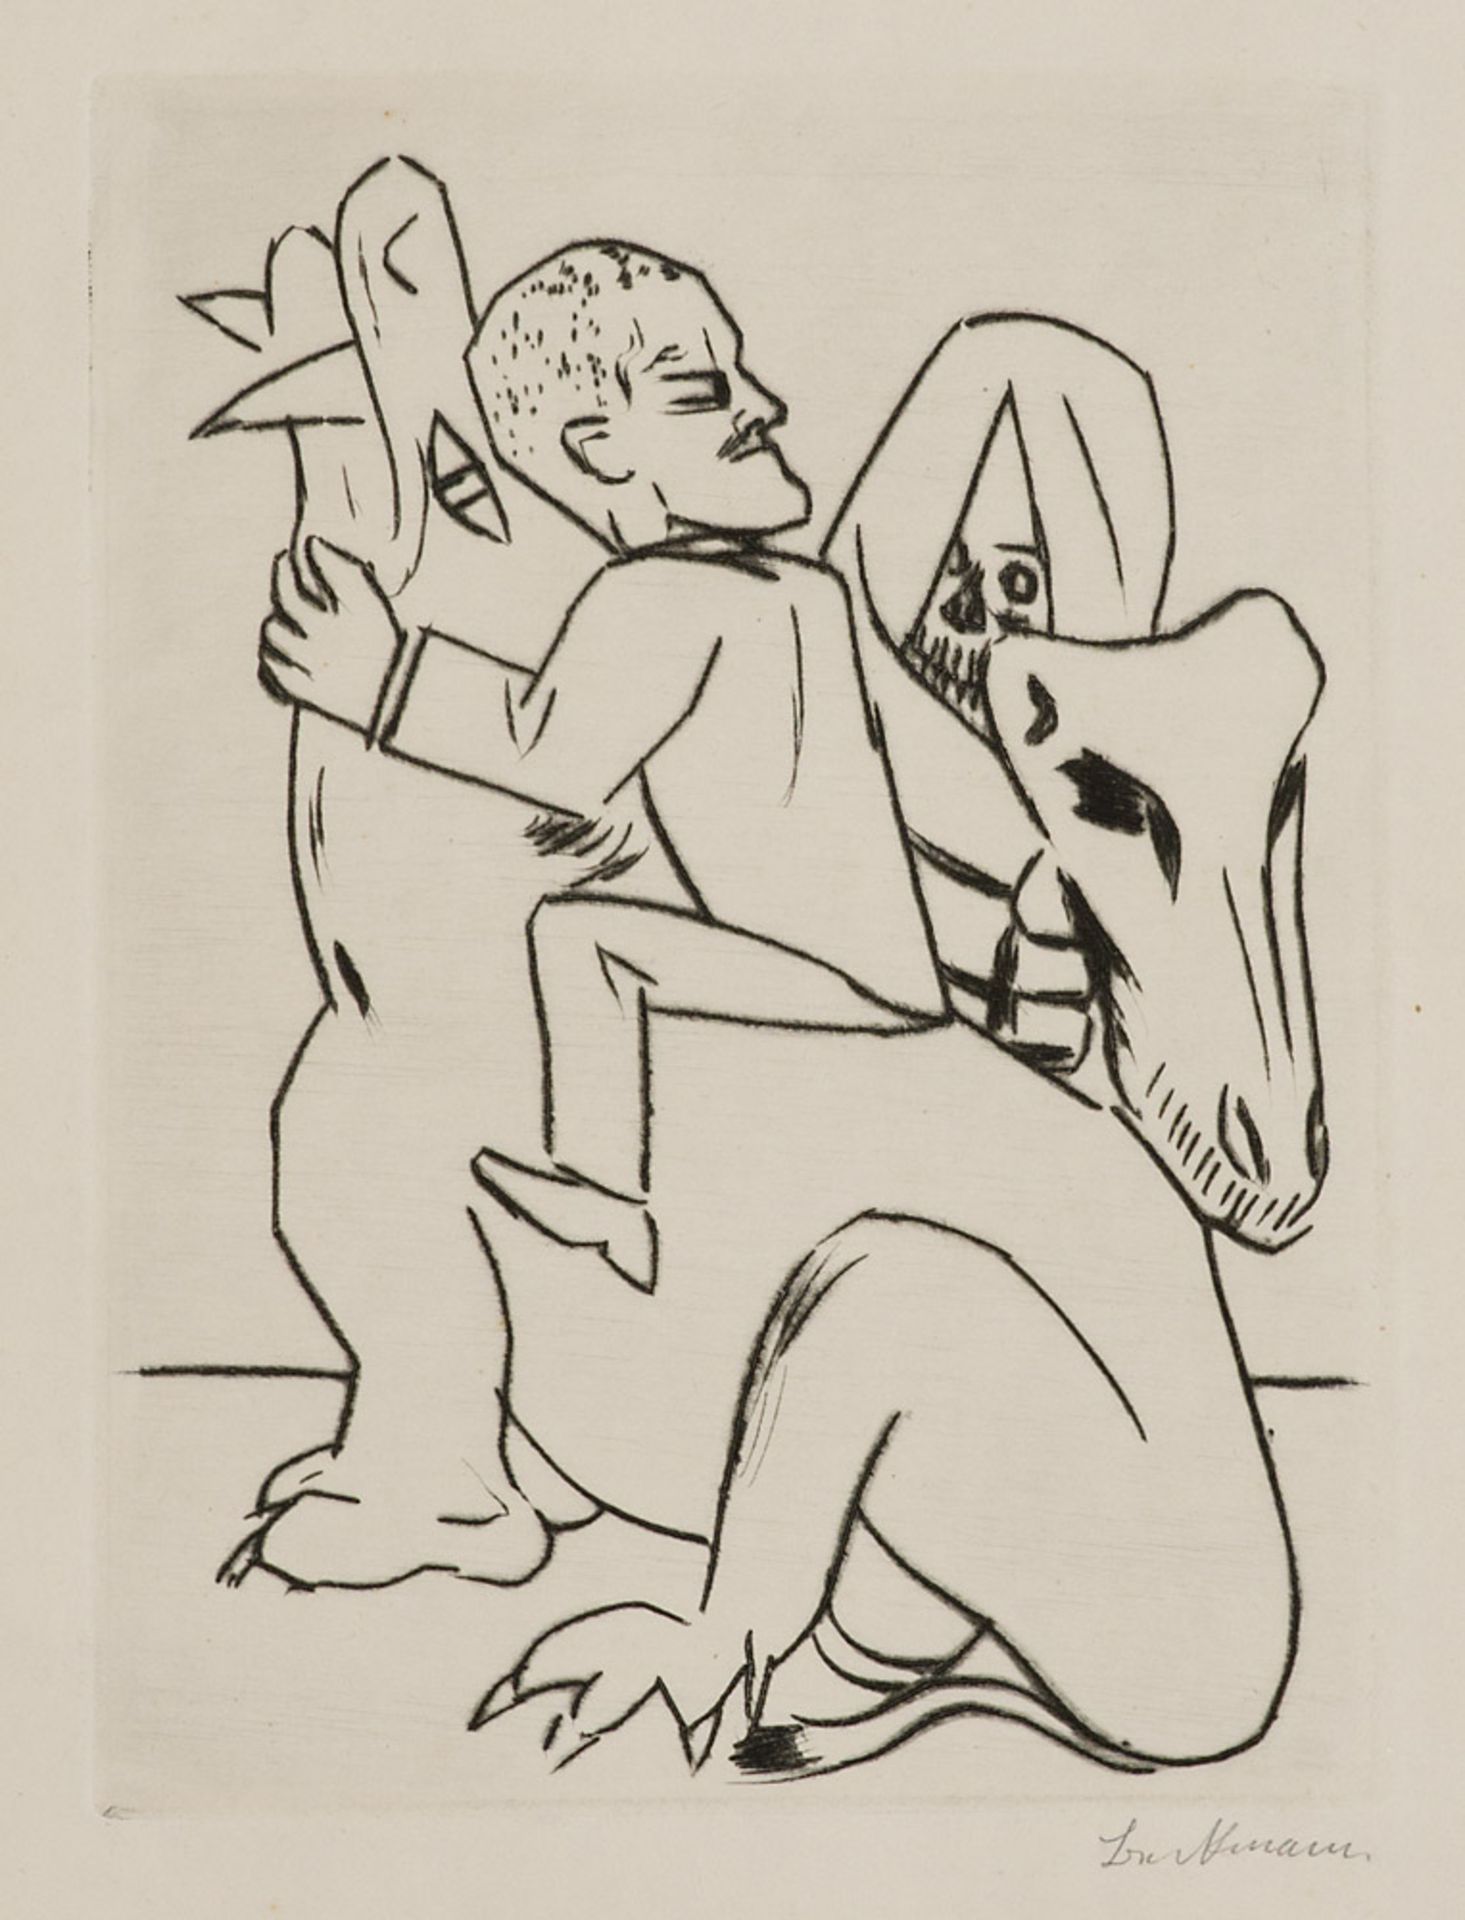 Beckmann, Max. (1884 Leipzig - 1950 New York). Blatt 4 aus "Ebbi". 1924. Kaltnadelradierung auf